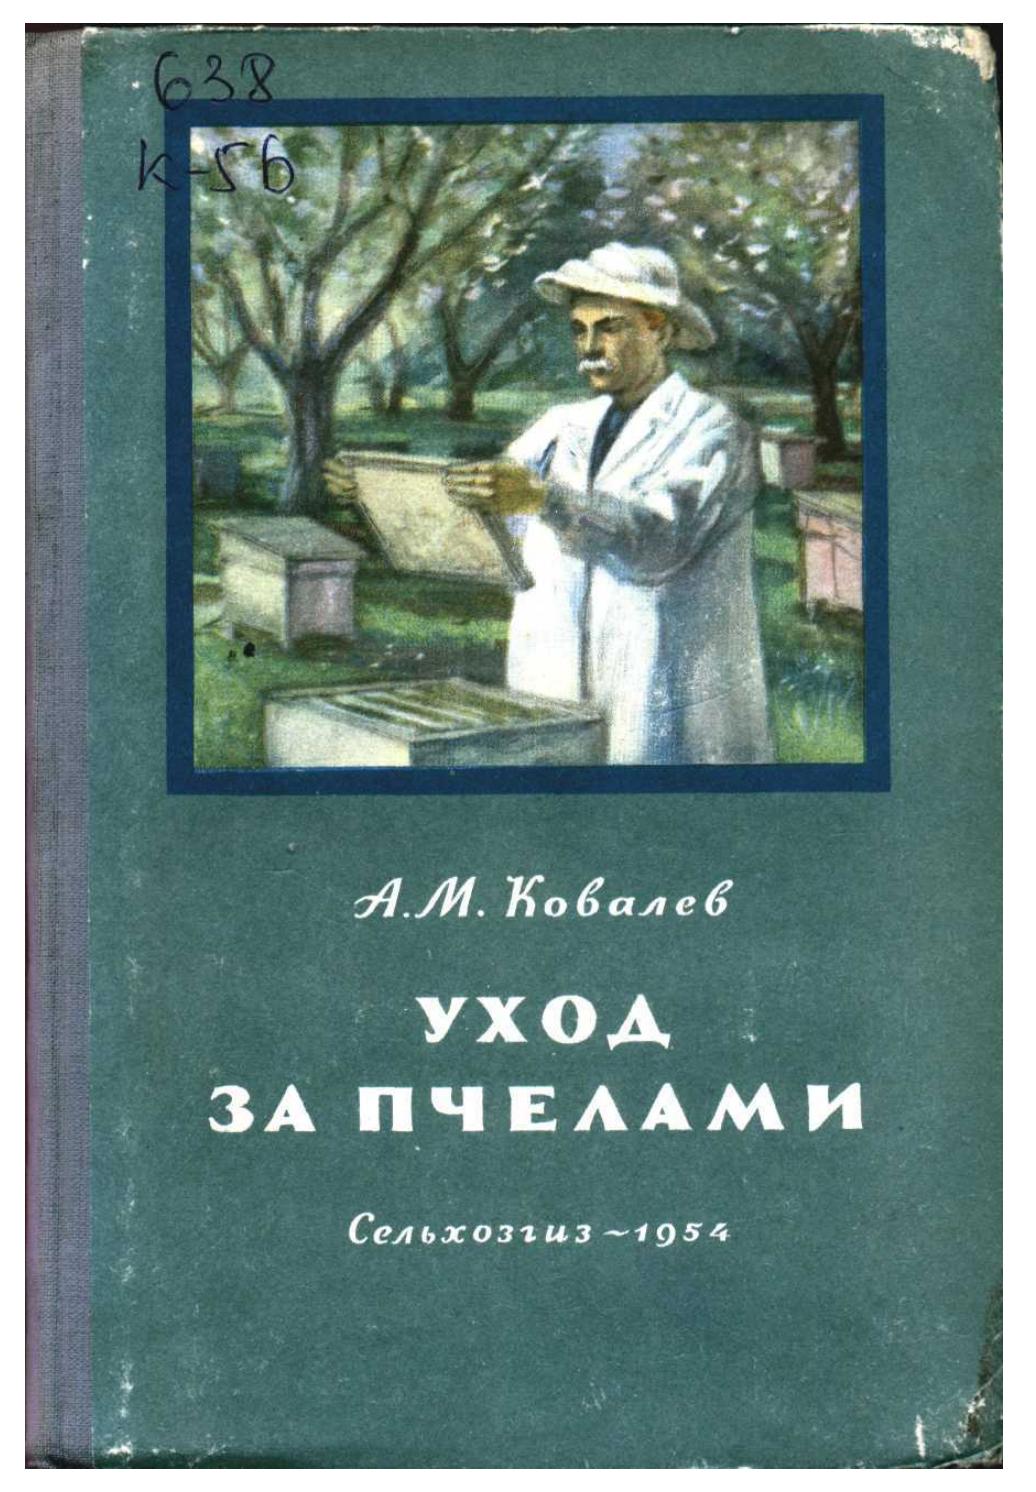 А. М. Ковалев - Уход за пчелами - 1954